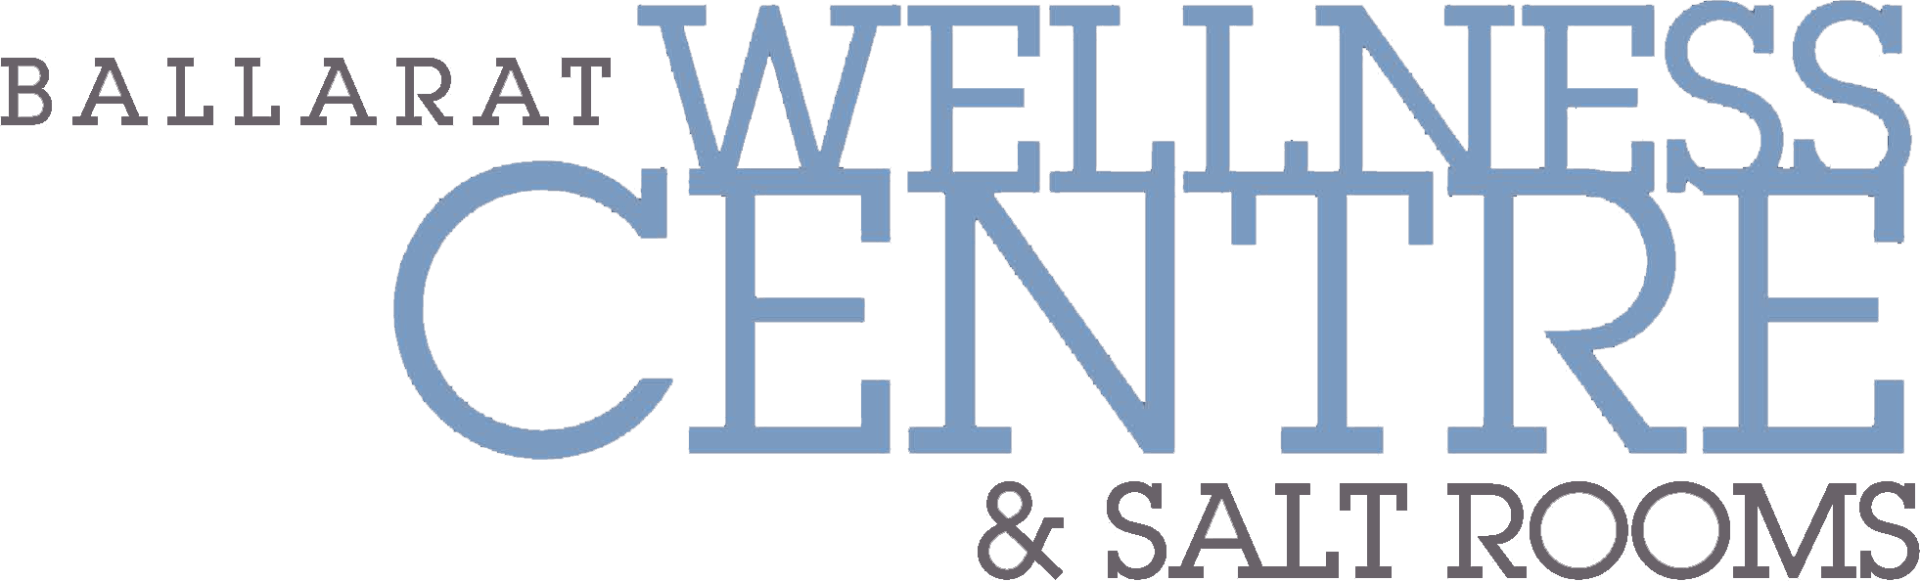 Ballarat Salt Rooms and Wellness Centre Logo